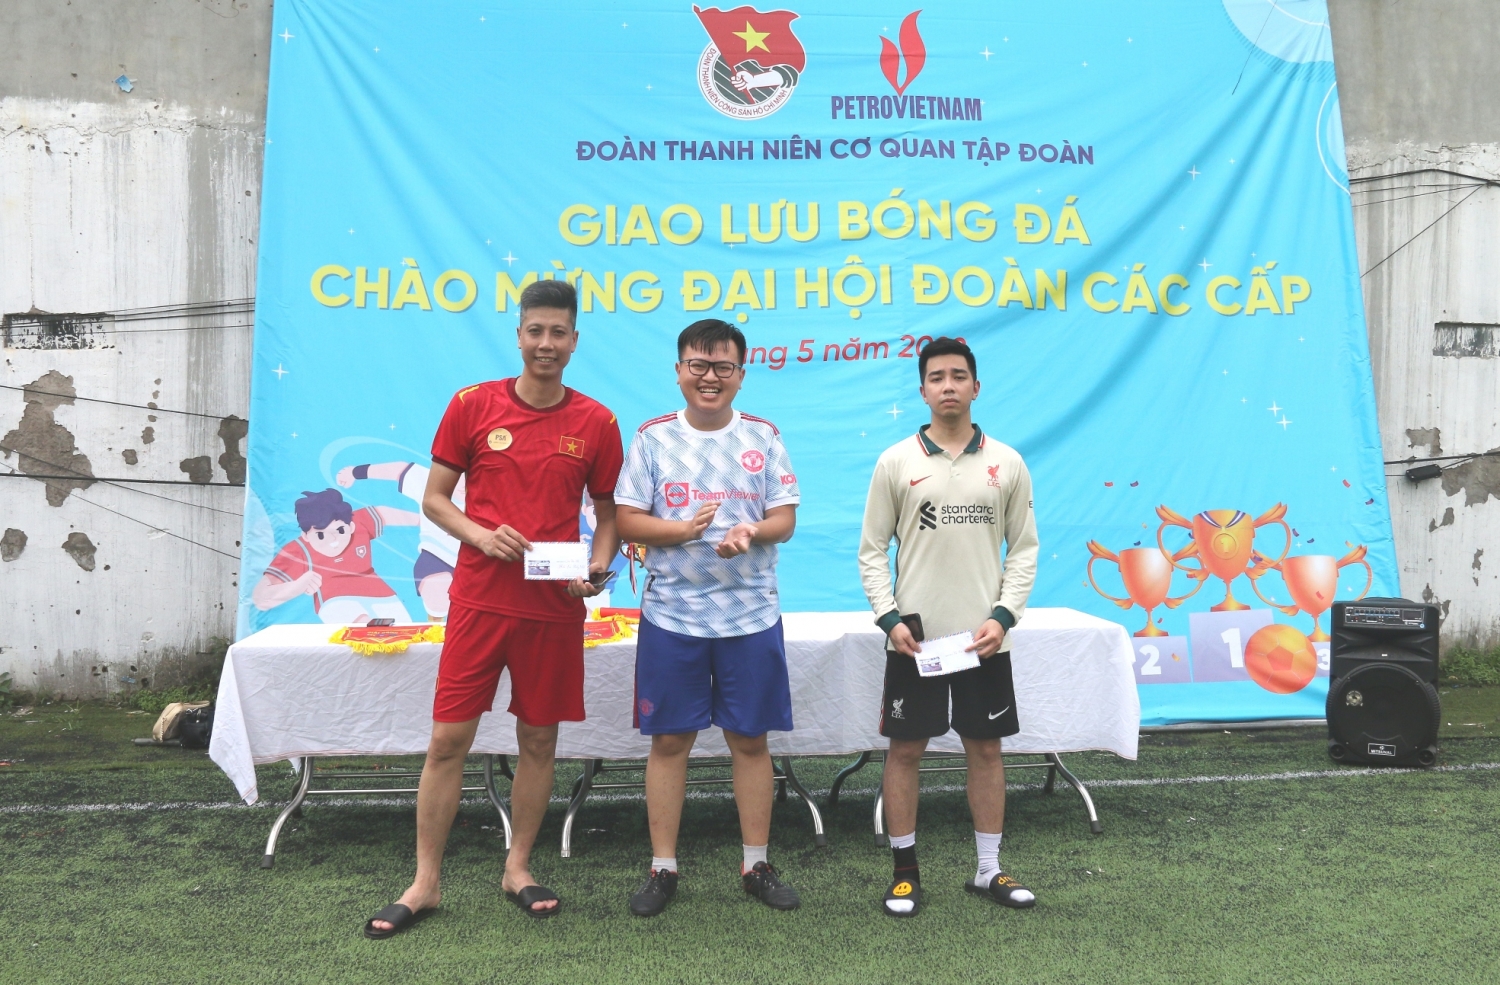 Đoàn Thanh niên Cơ quan Tập đoàn bế mạc giải bóng đá chào mừng Đại hội Đoàn các cấp